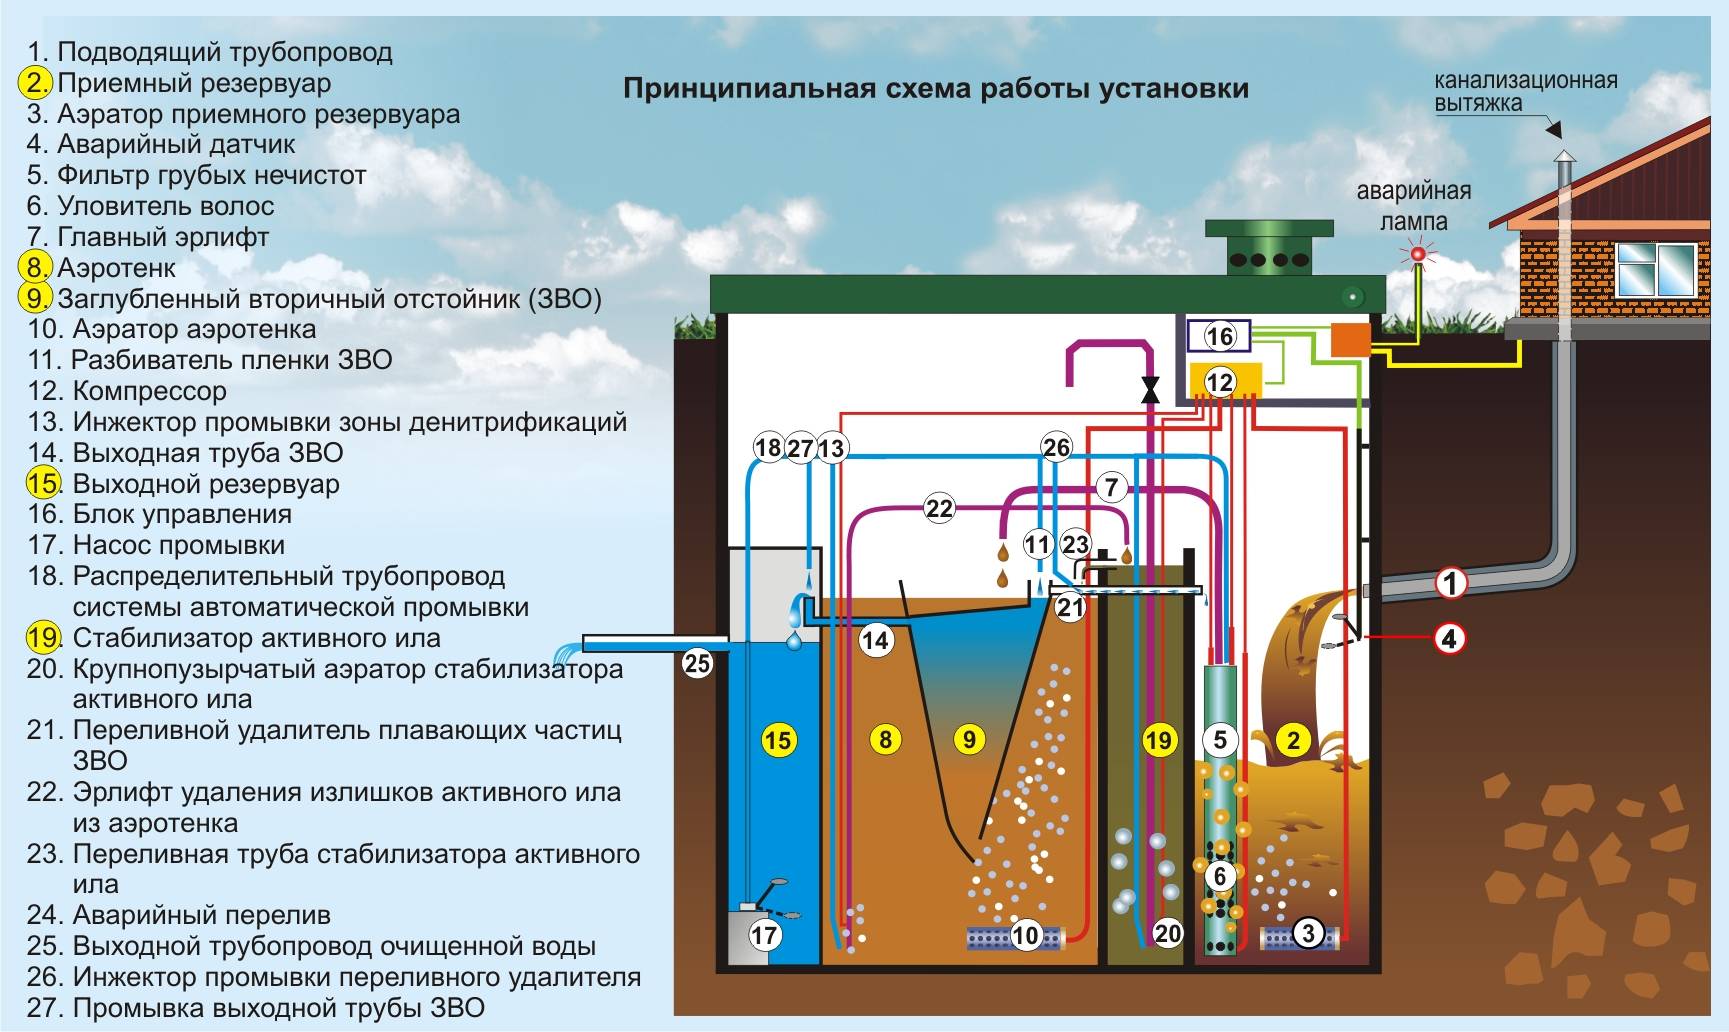 Что такое канализационная насосная станция - кнс: принципы и виды